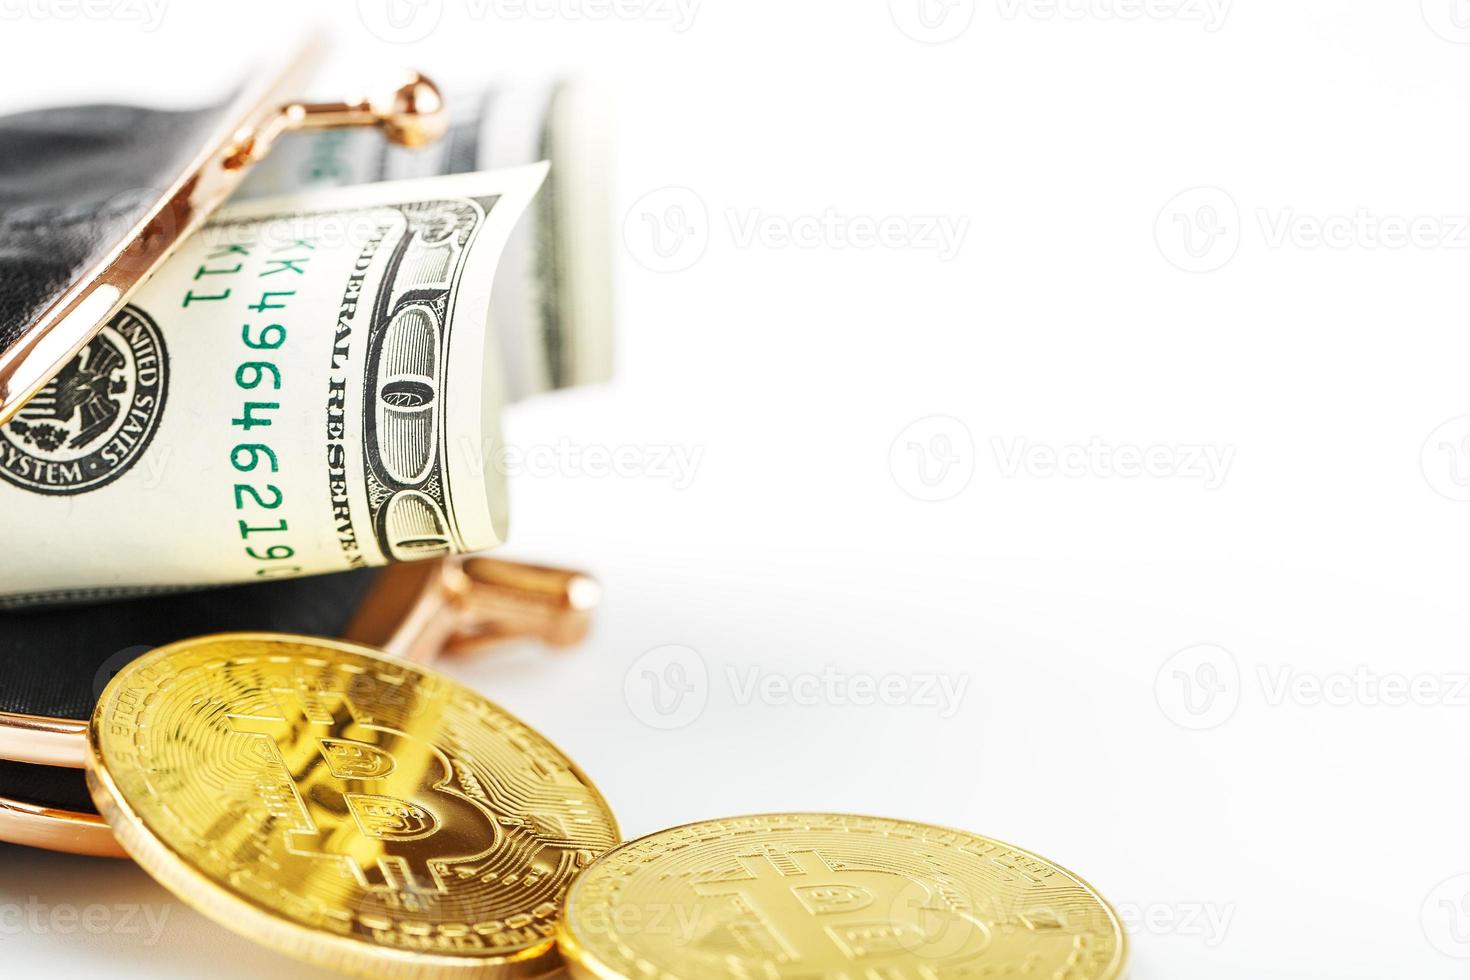 carteira clássica preta com dólares e moedas de bitcoin em um fundo branco. foto